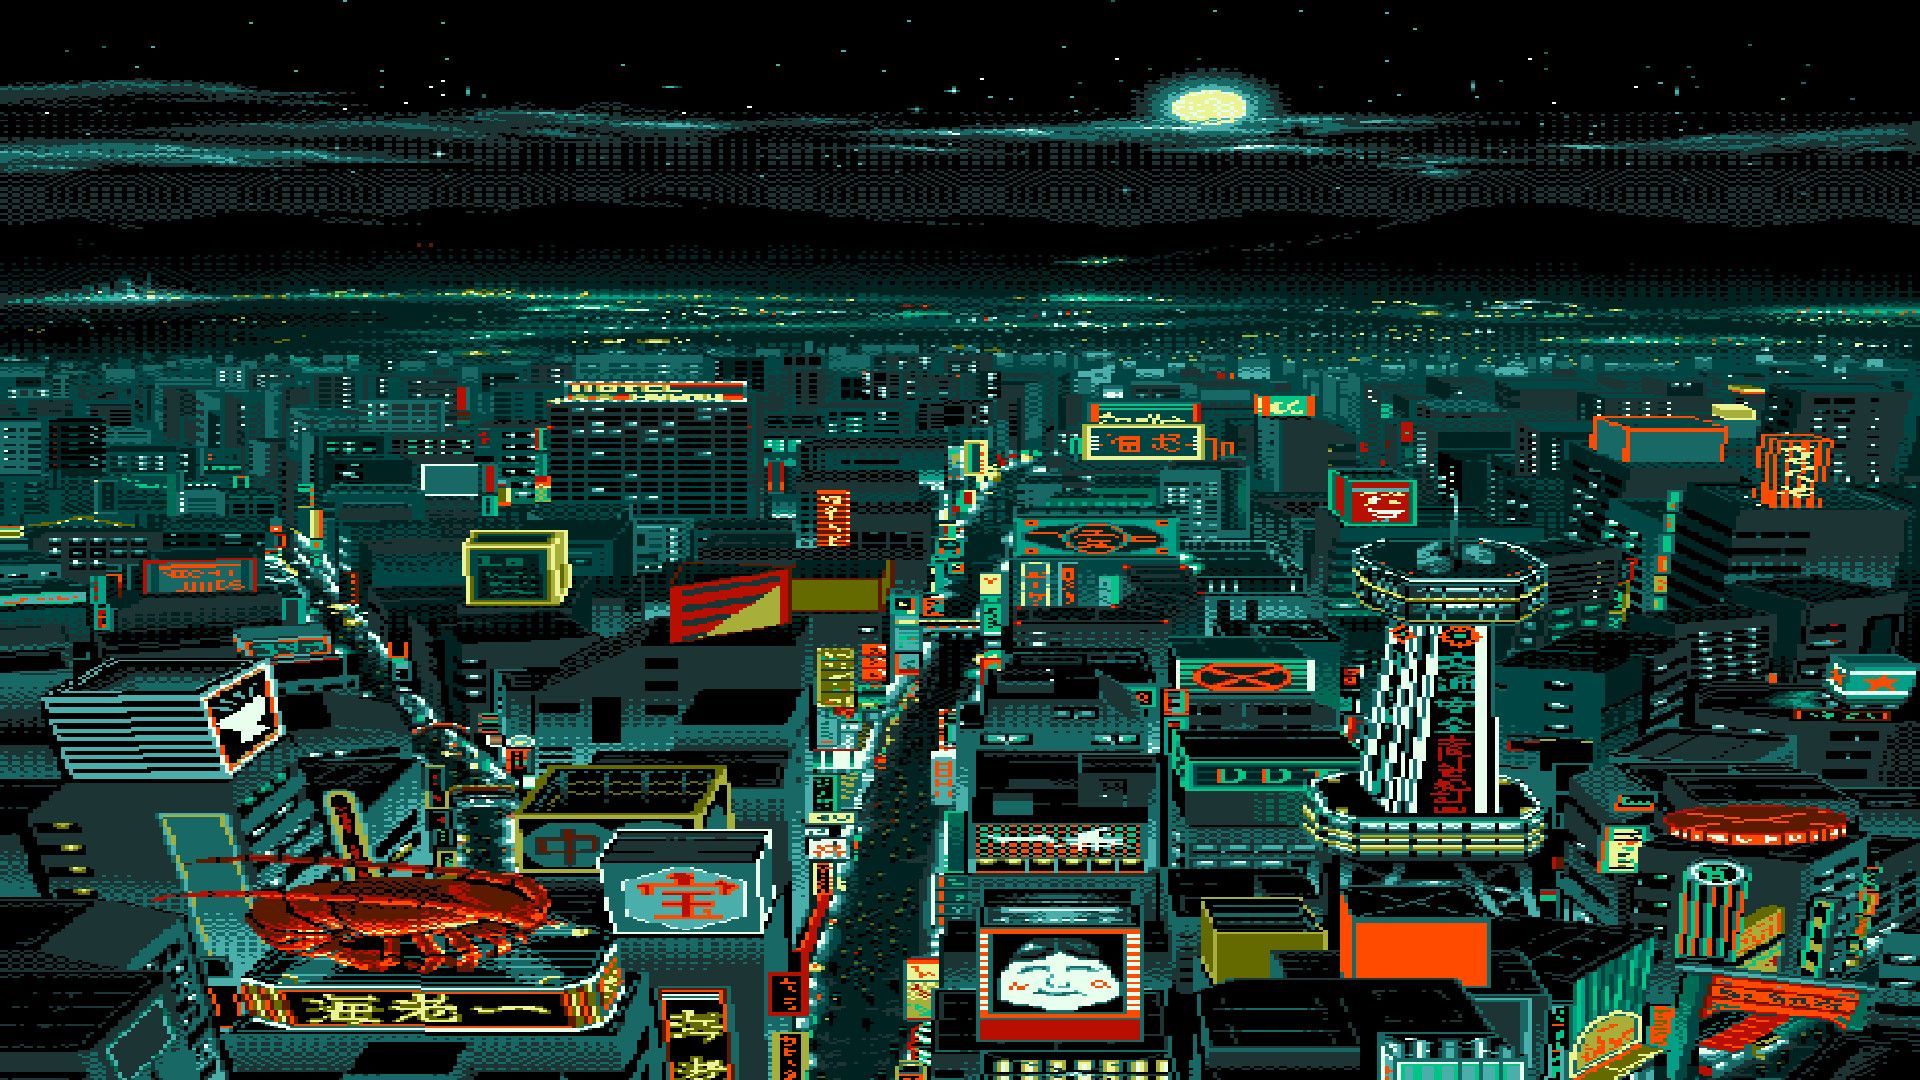 دانلود عکس منظره شهر در انیمیشن های پیکسلی pixel art